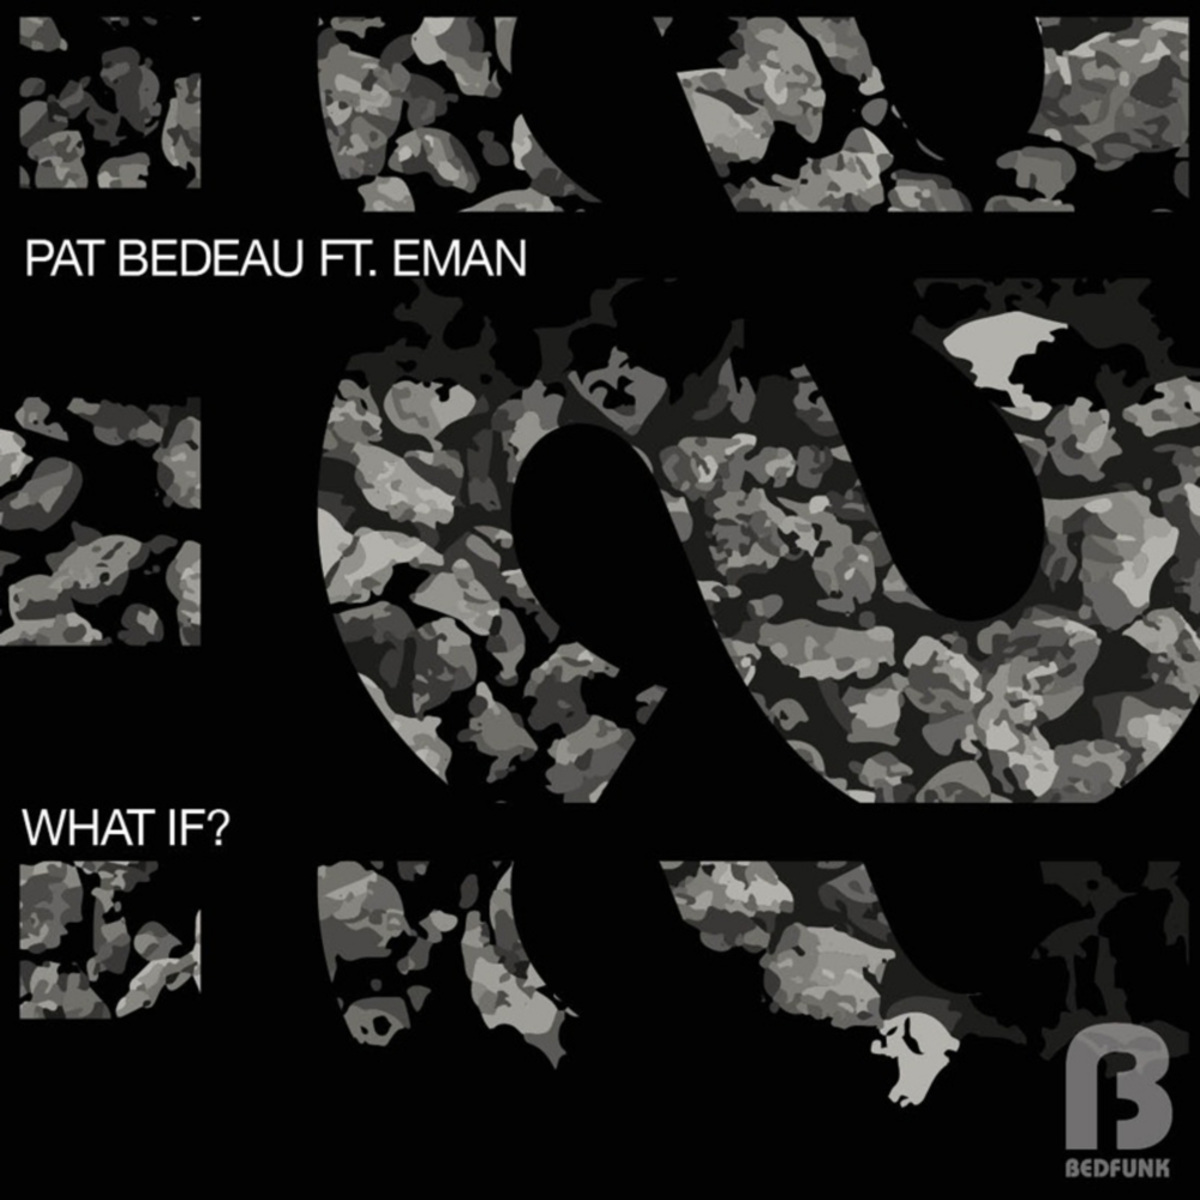 Pat Bedeau ft E-Man - What If? / Bedfunk